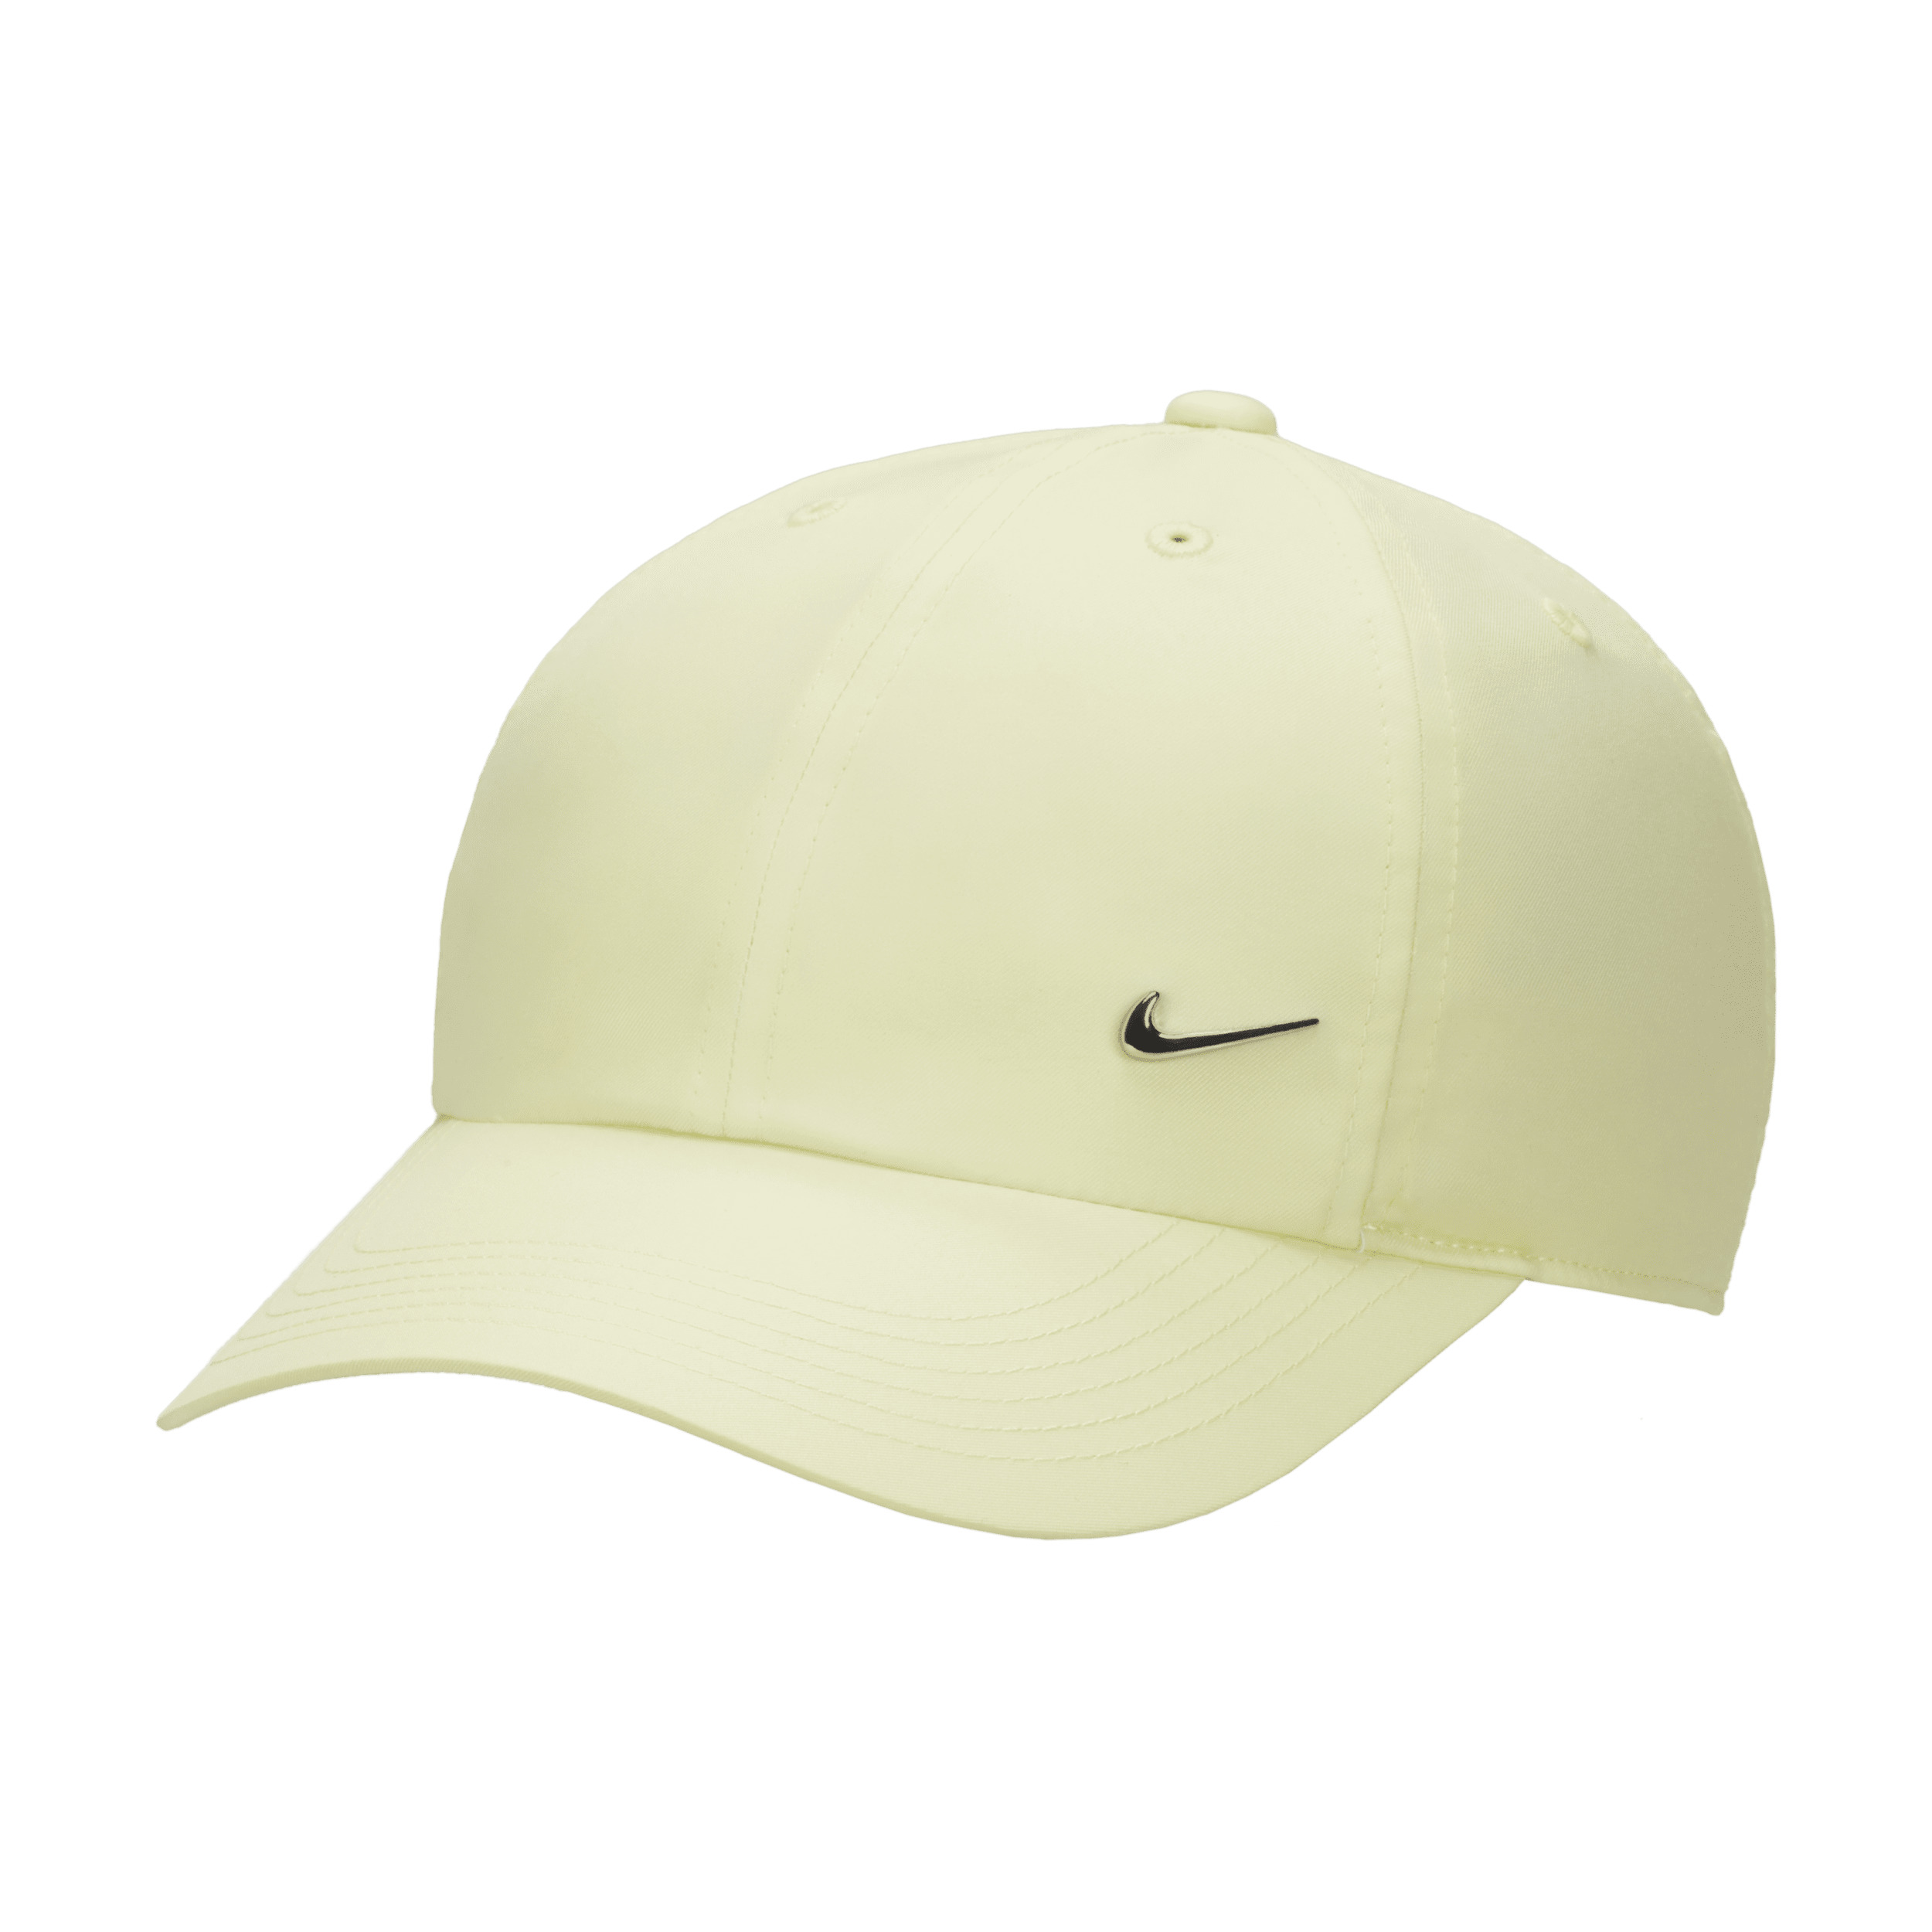 Nike Dri-FIT Club Gorra sin estructura con logotipo Swoosh metálico - Niño/a - Verde